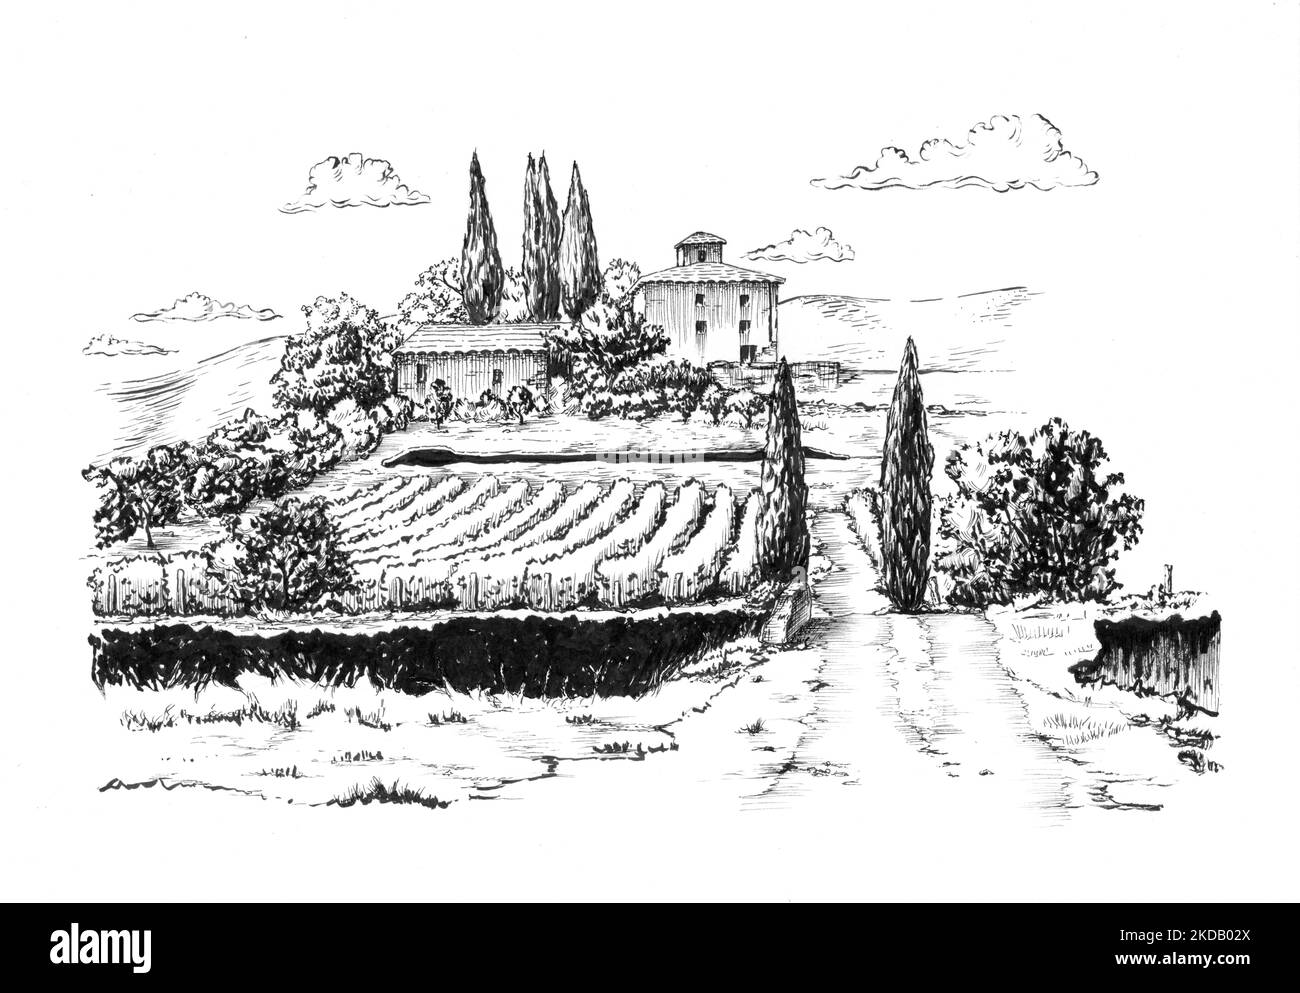 Dibujo en tinta de un paisaje rural con un viñedo. Ilustración tradicional en papel. Foto de stock